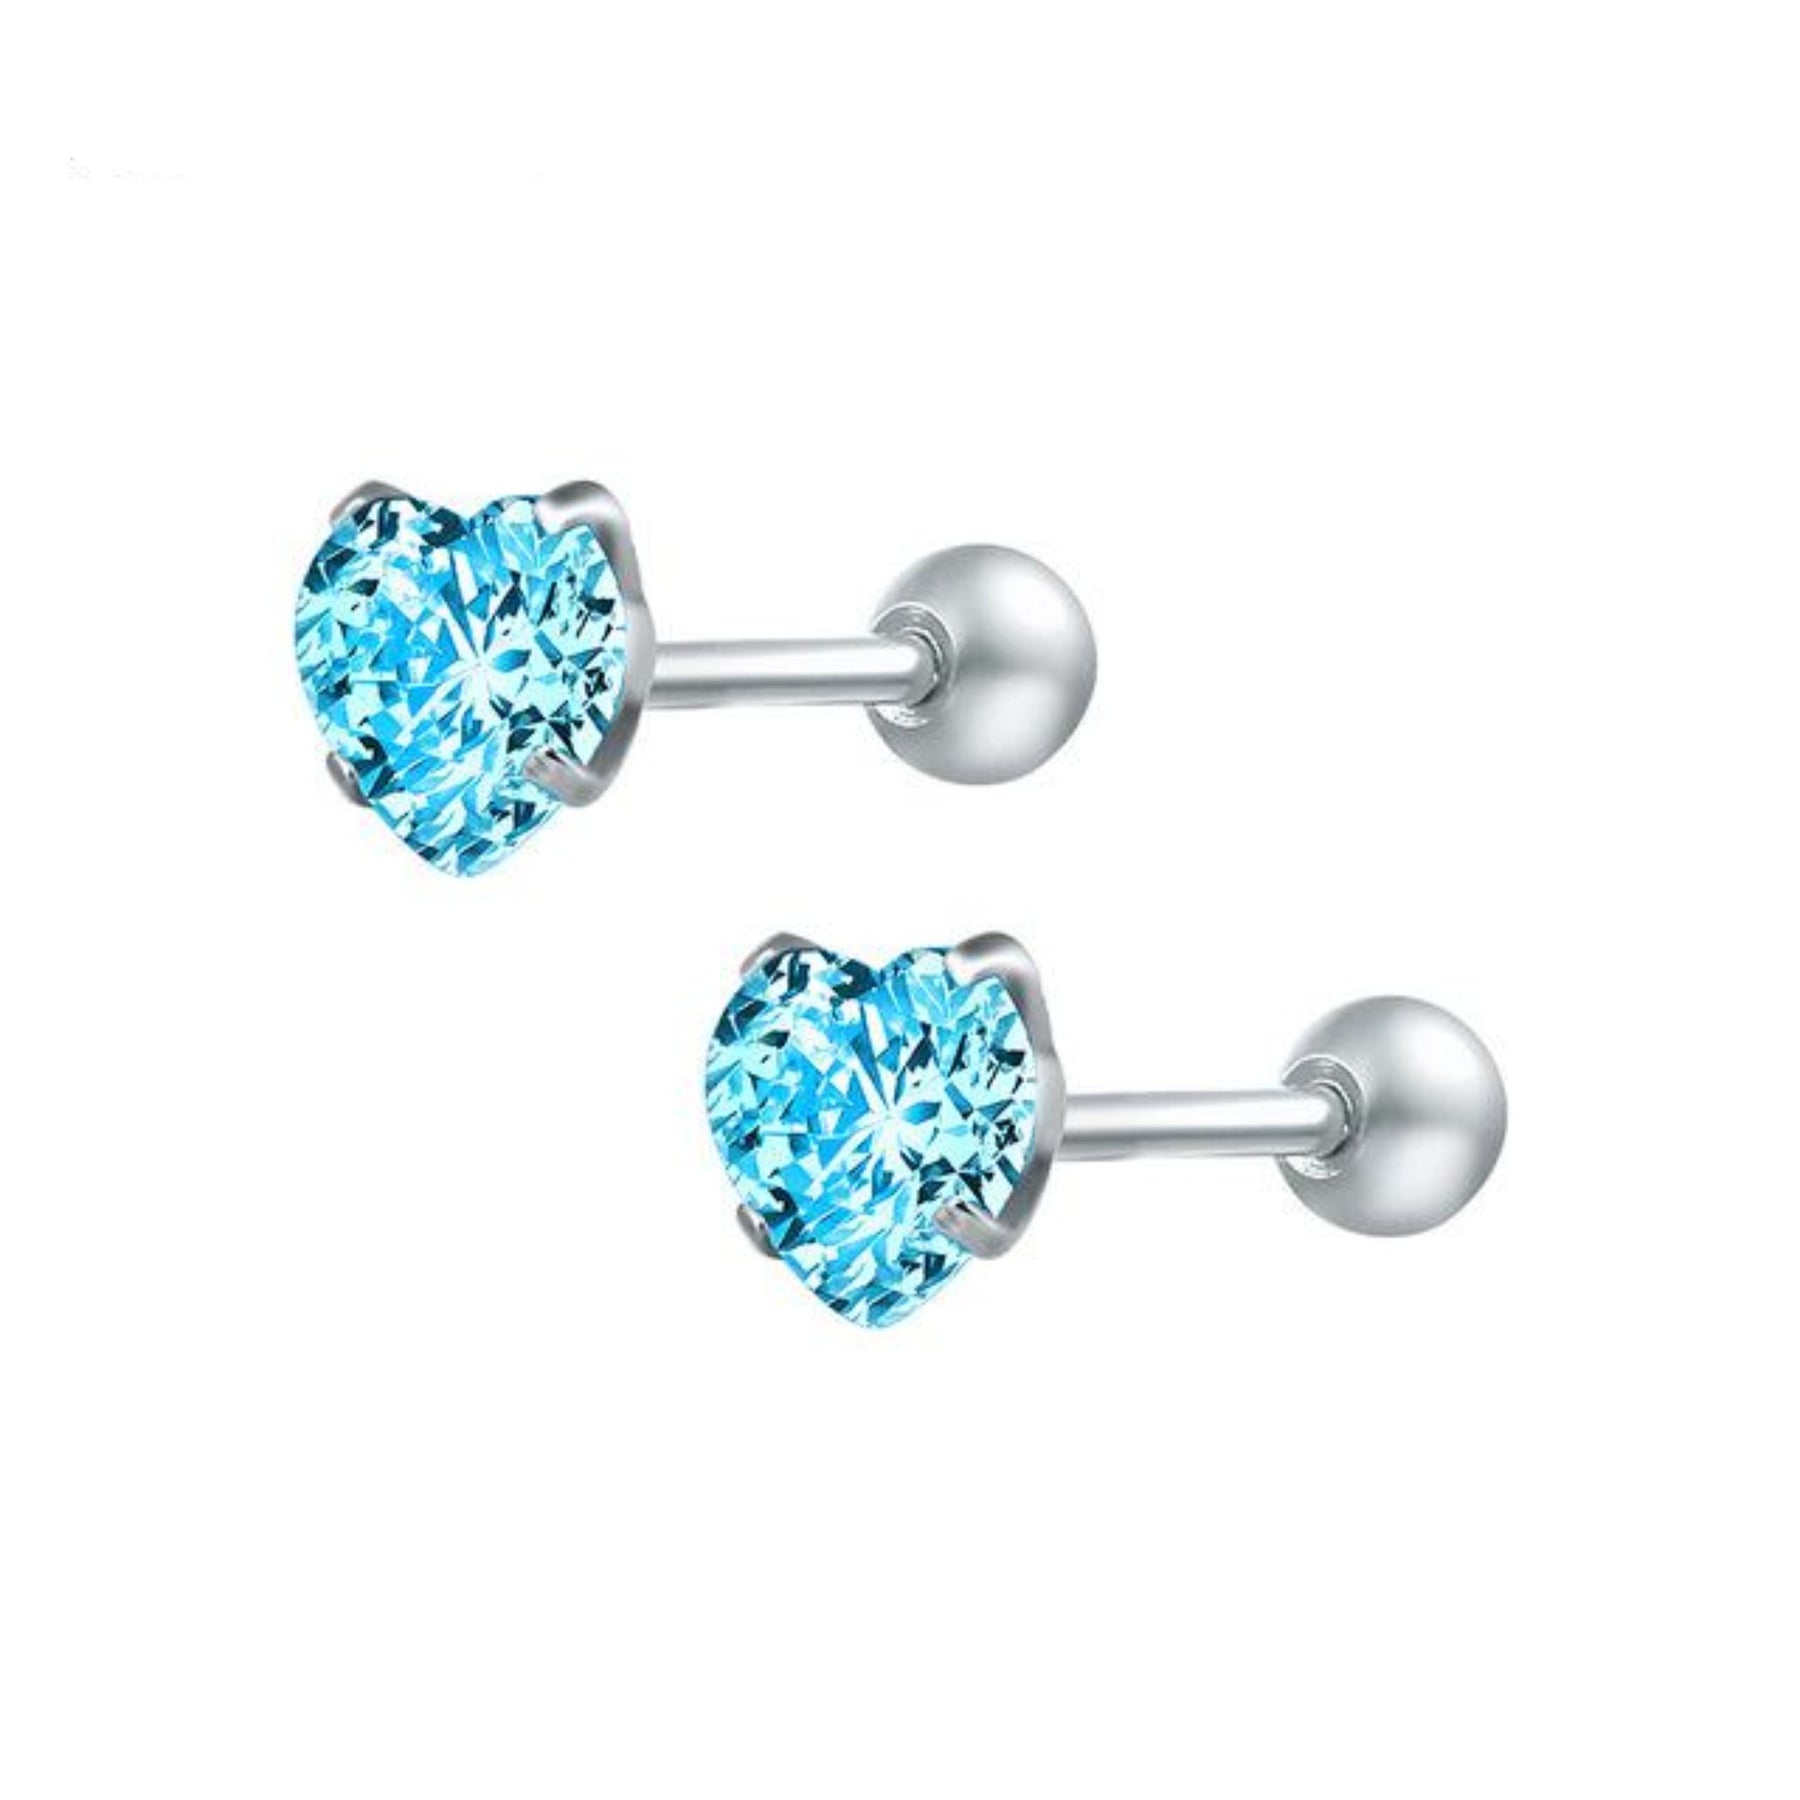 Amie Swarovski Crystal Heart Ear Piercing Jewelry 16G Silver Earring ...